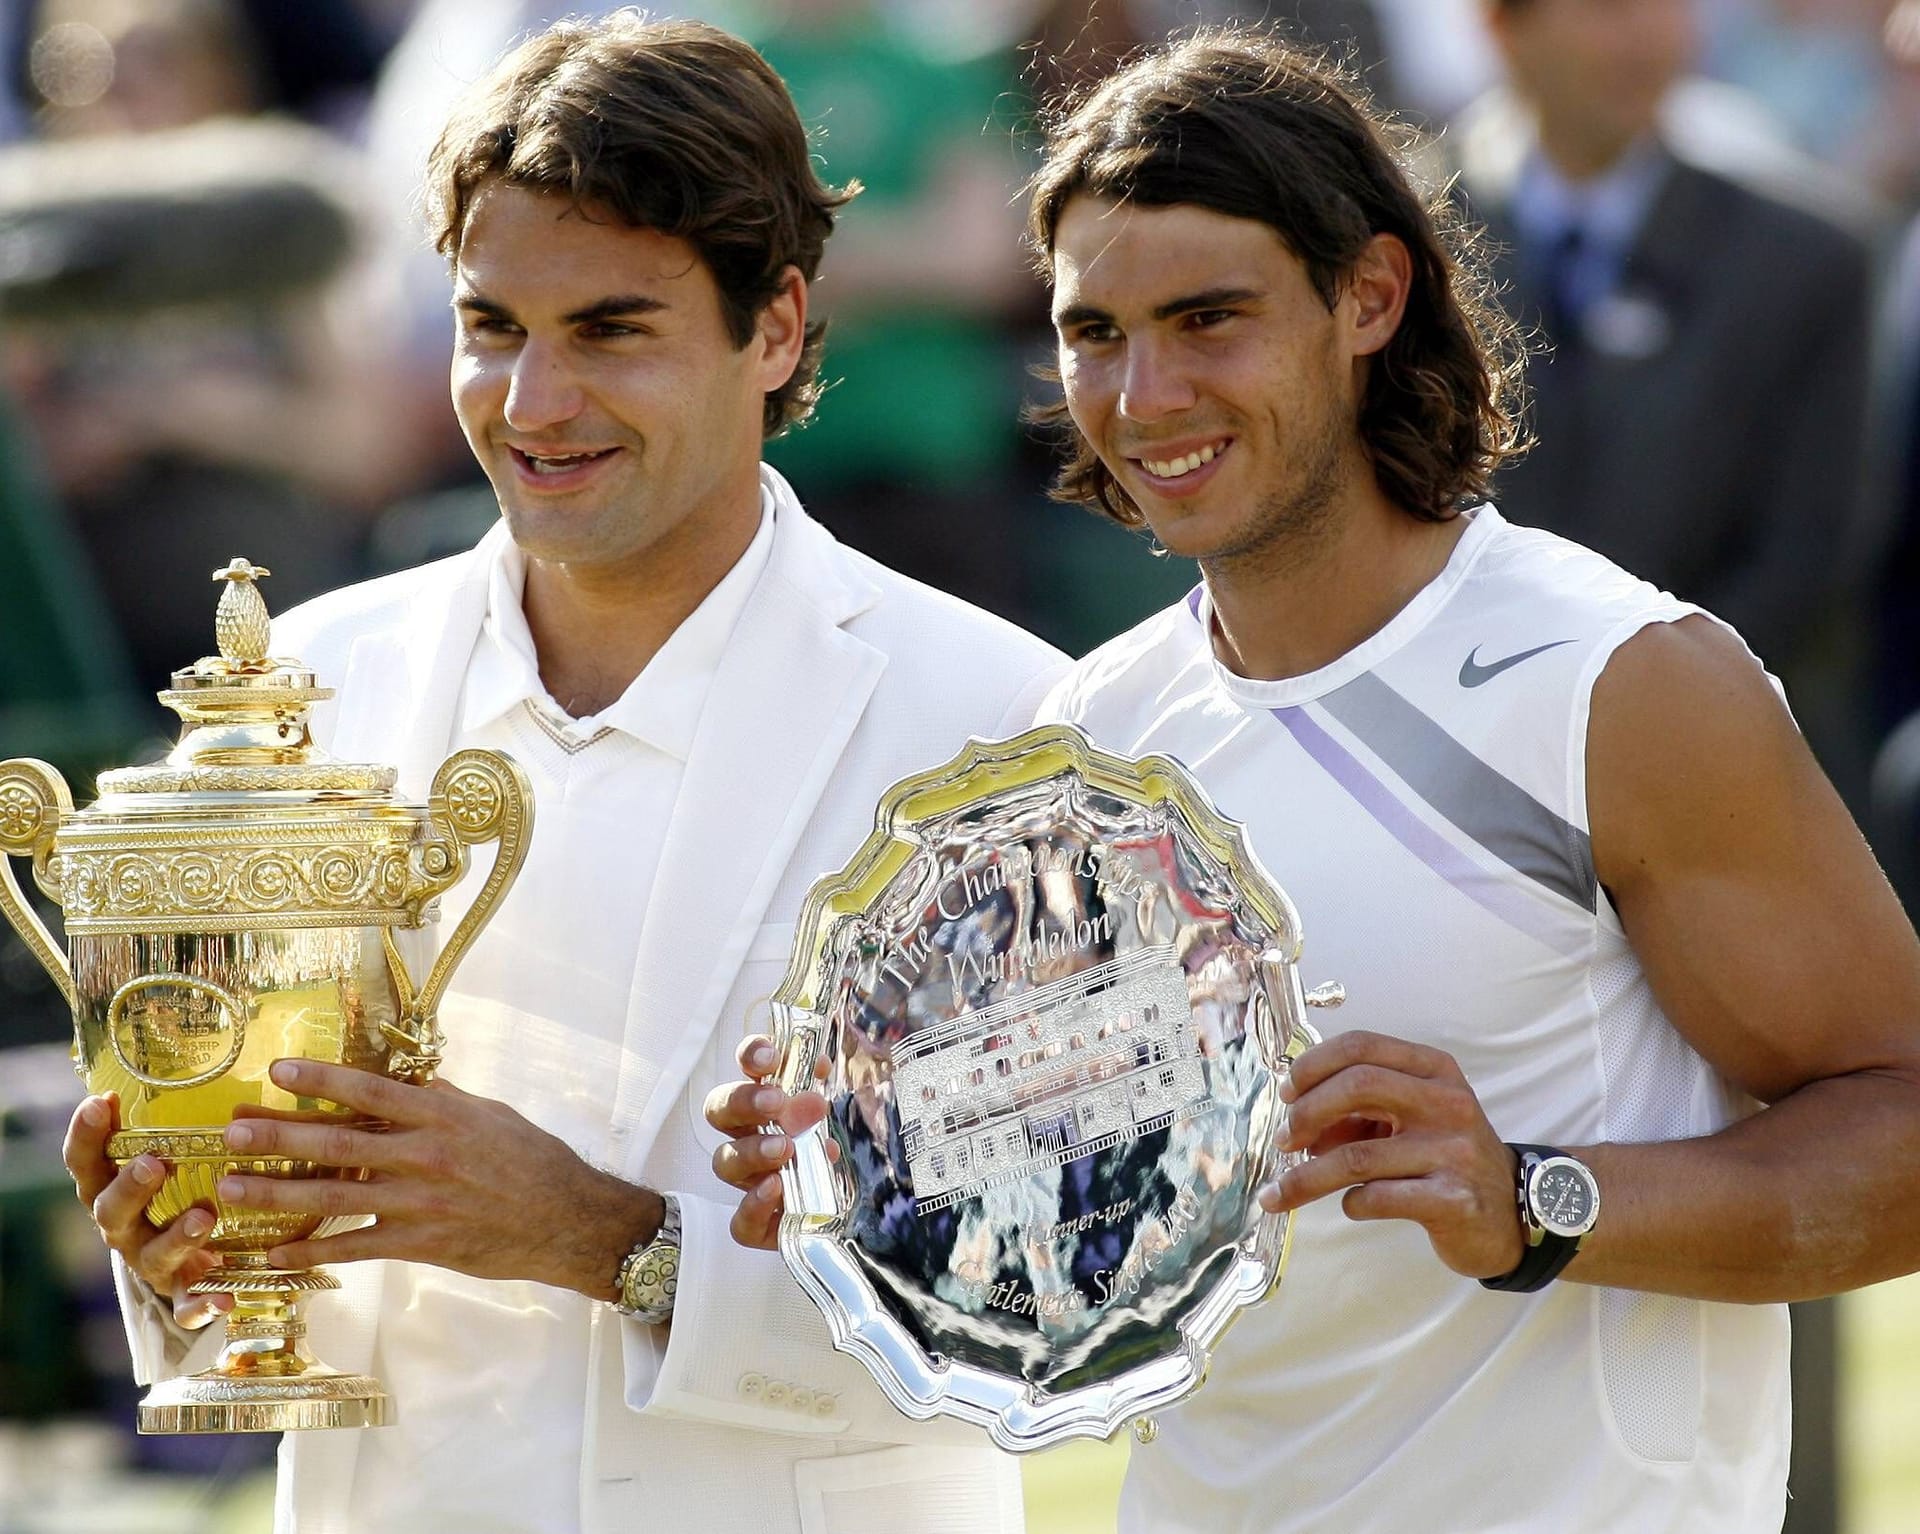 Wimbledon 2007: Mit einem Fünfsatz-Sieg gegen seinen Rivalen Rafael Nadal gewinnt Federer das Wimbledon-Turnier zum fünften Mal in Folge. Damit stellt er den Rekord von Björn Borg ein.